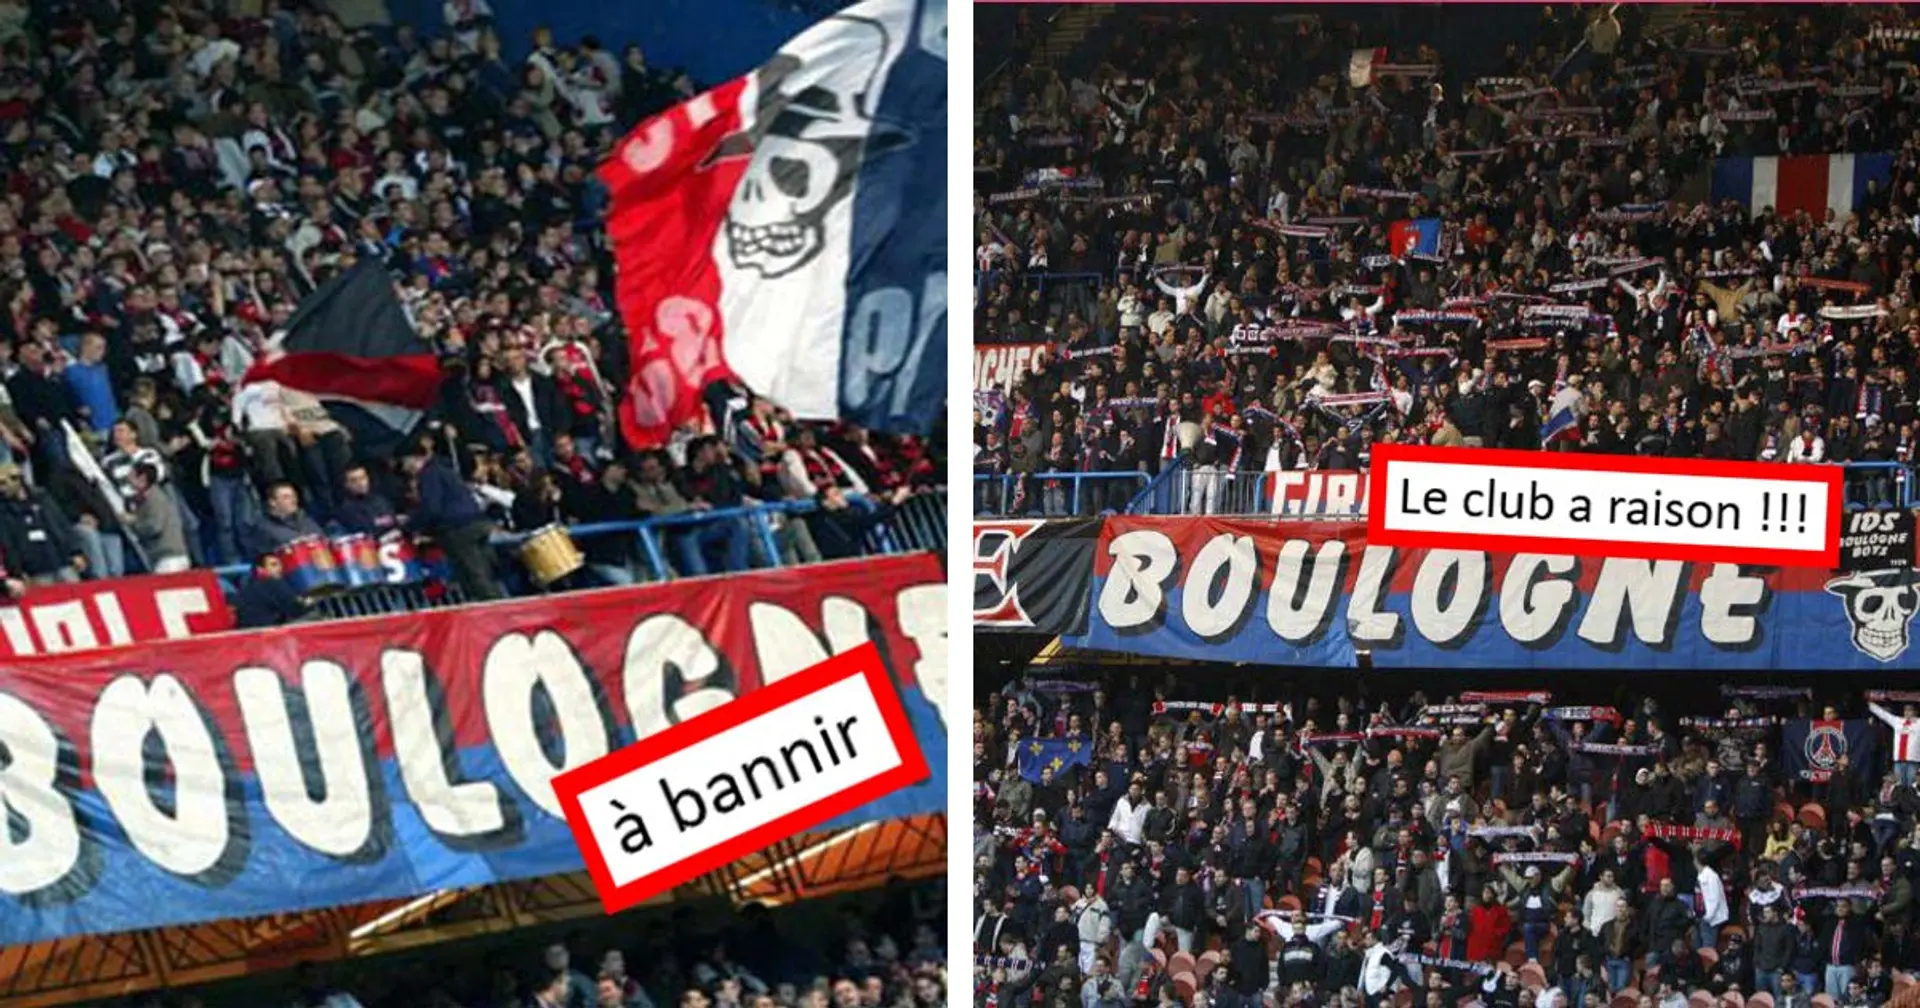 "Le club a raison", les fans du PSG favorables à la décision de ne pas rouvrir la Tribune Boulogne du Parc des Princes